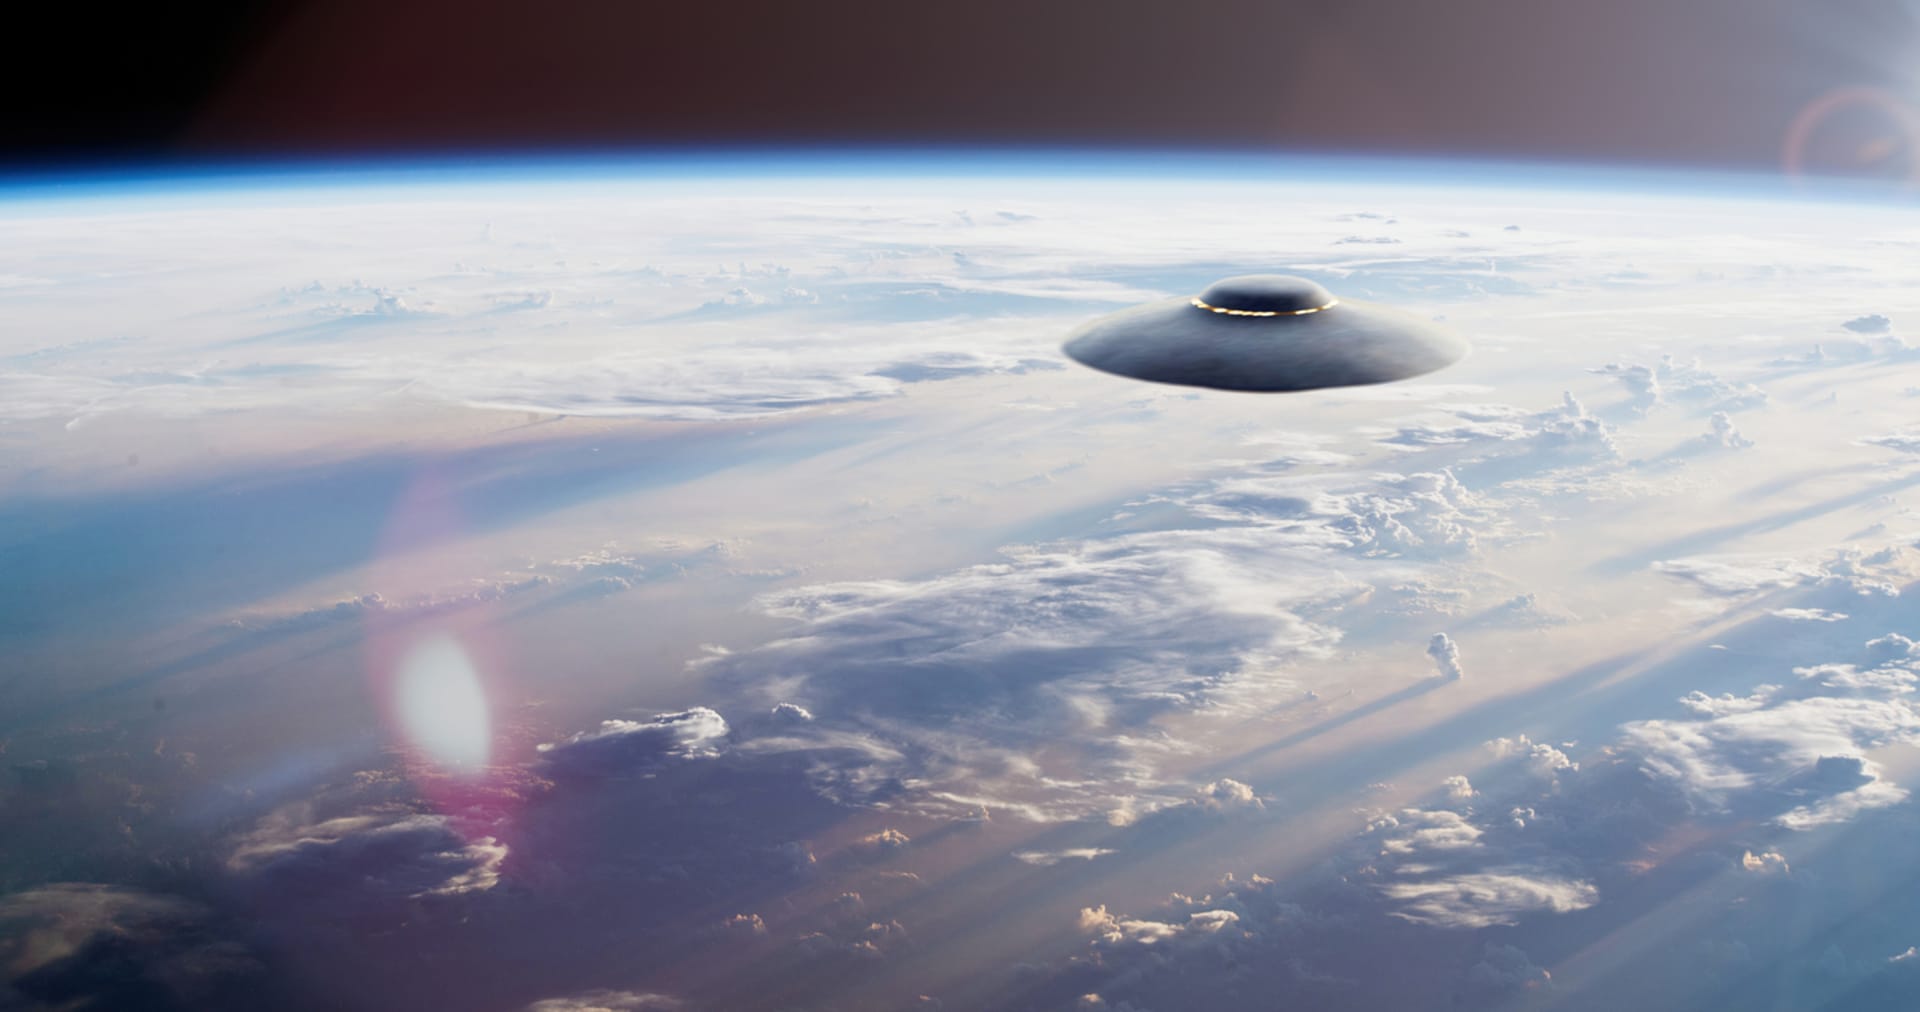 Pokud si přejete někdy nějaký UFO spatřit, můžete se teď řídit mapou